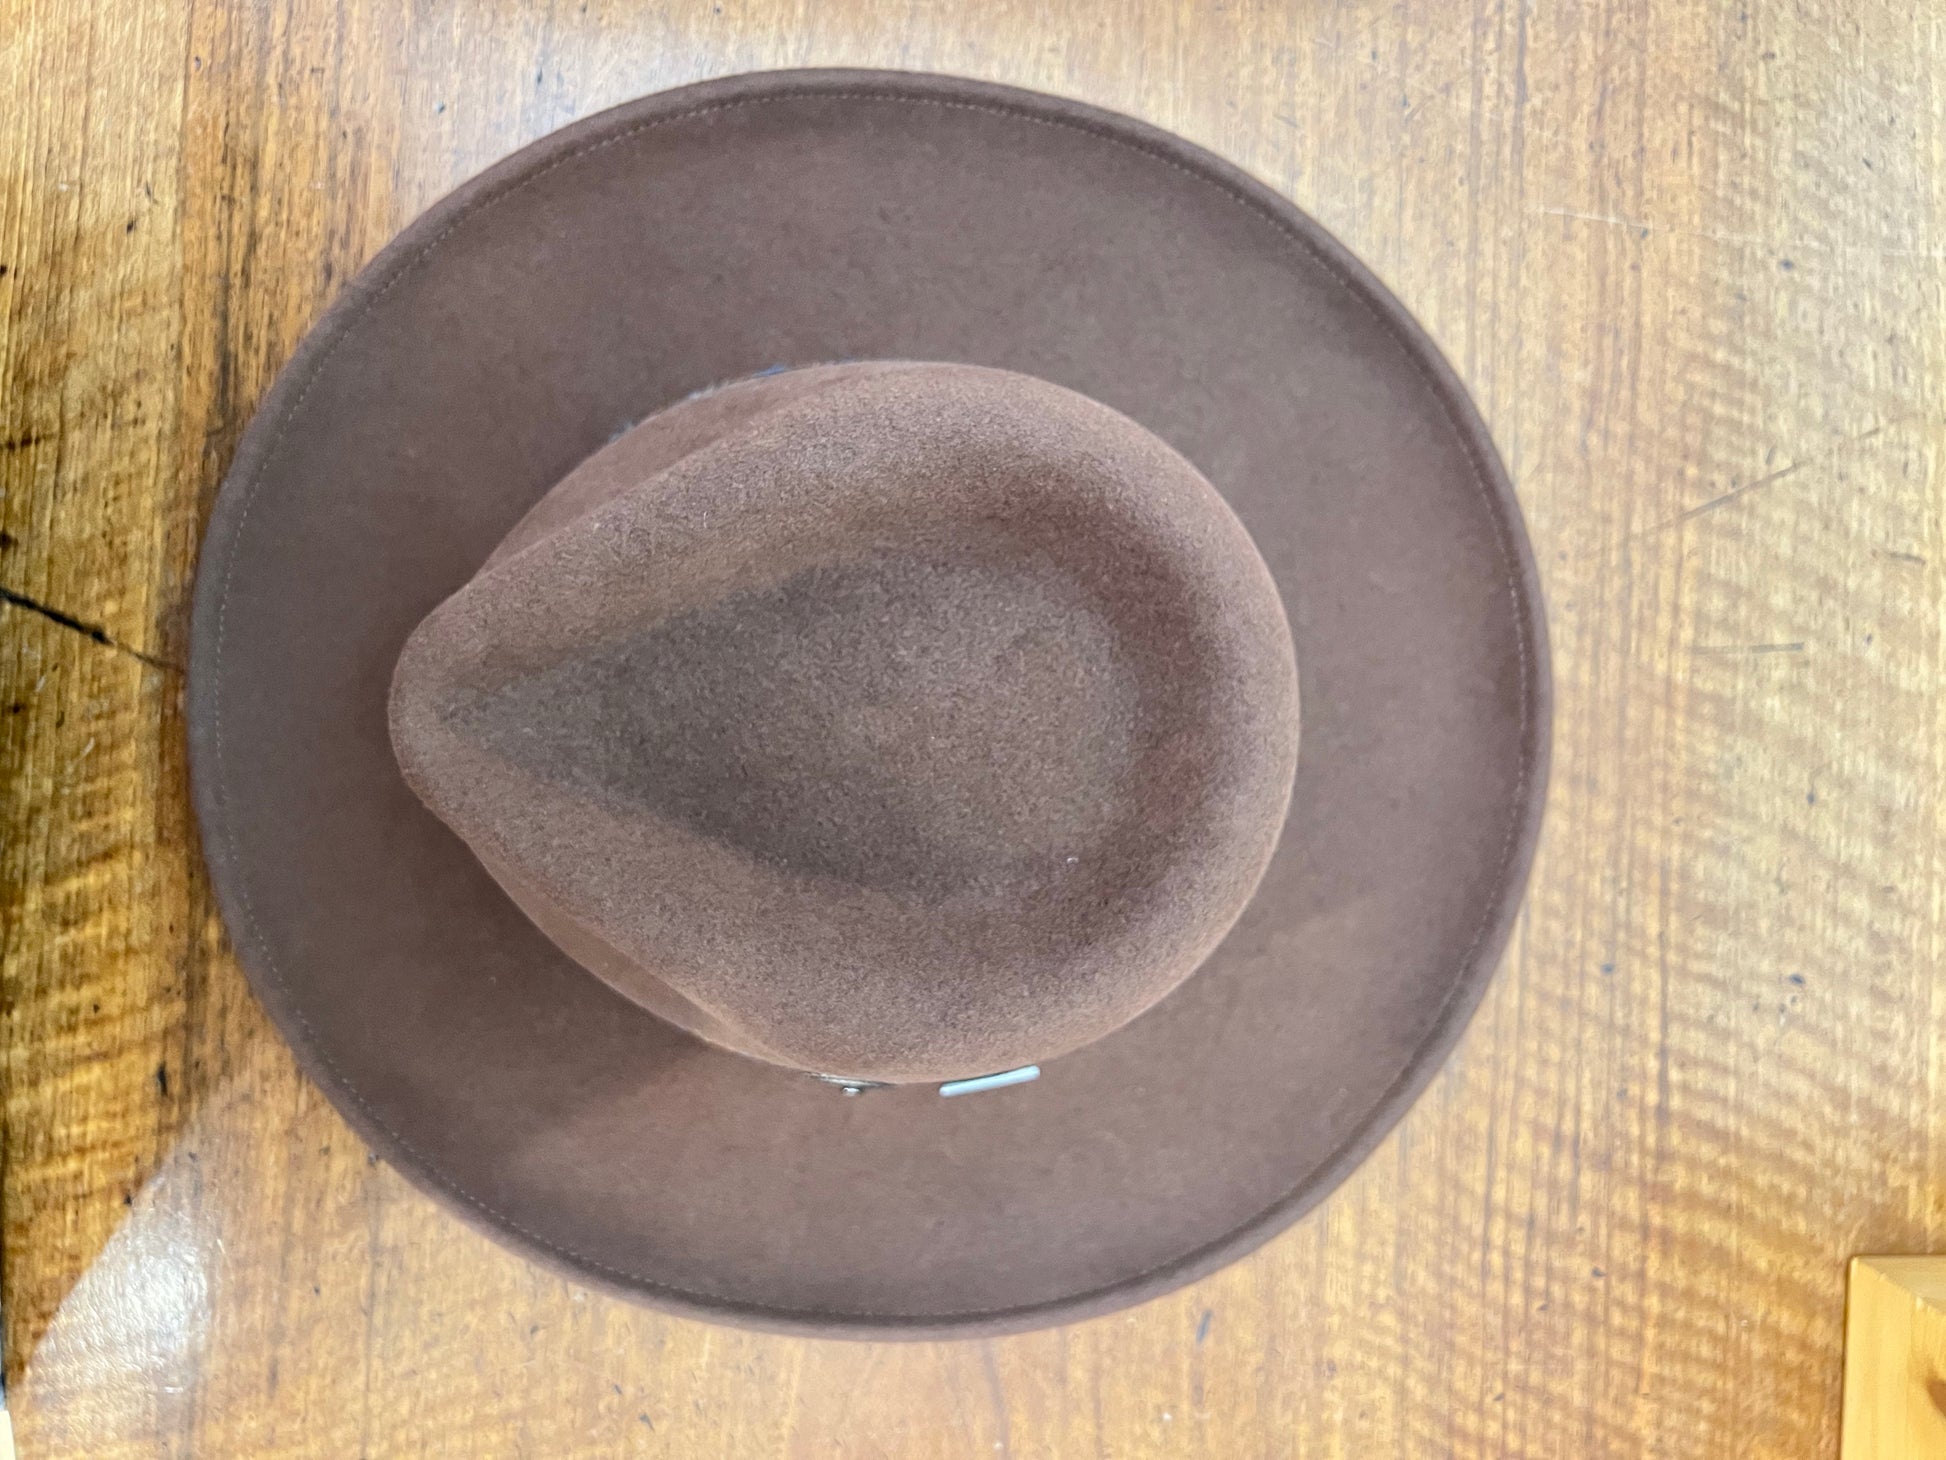 Cappello Country Cowboy In Feltro di Lana Stetson Marrone - Cappelleria Bacca